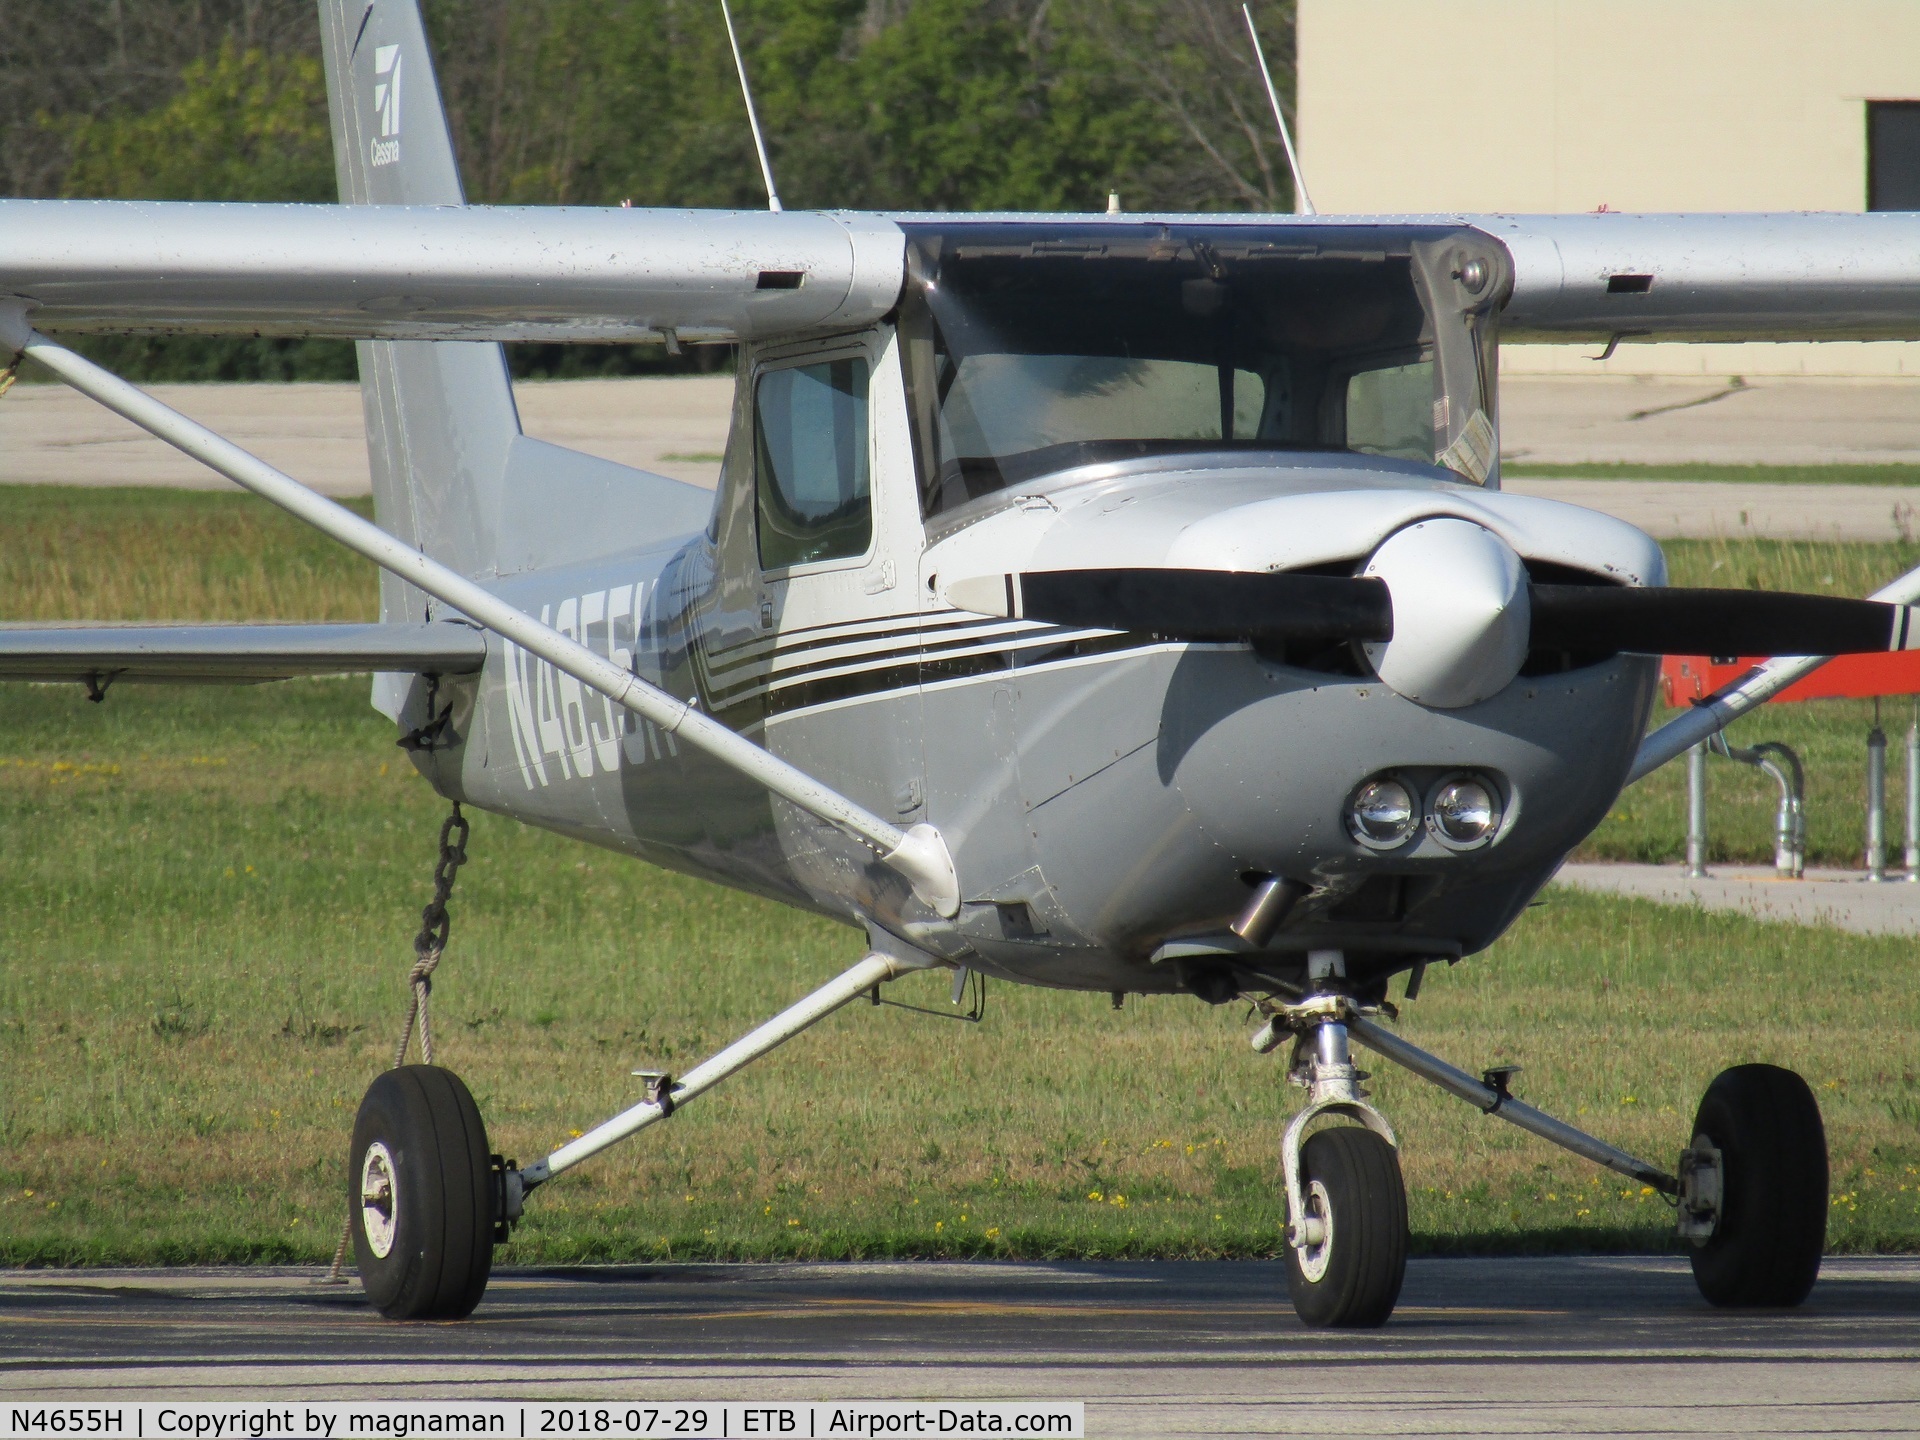 N4655H, 1979 Cessna 152 C/N 15283963, at west bend